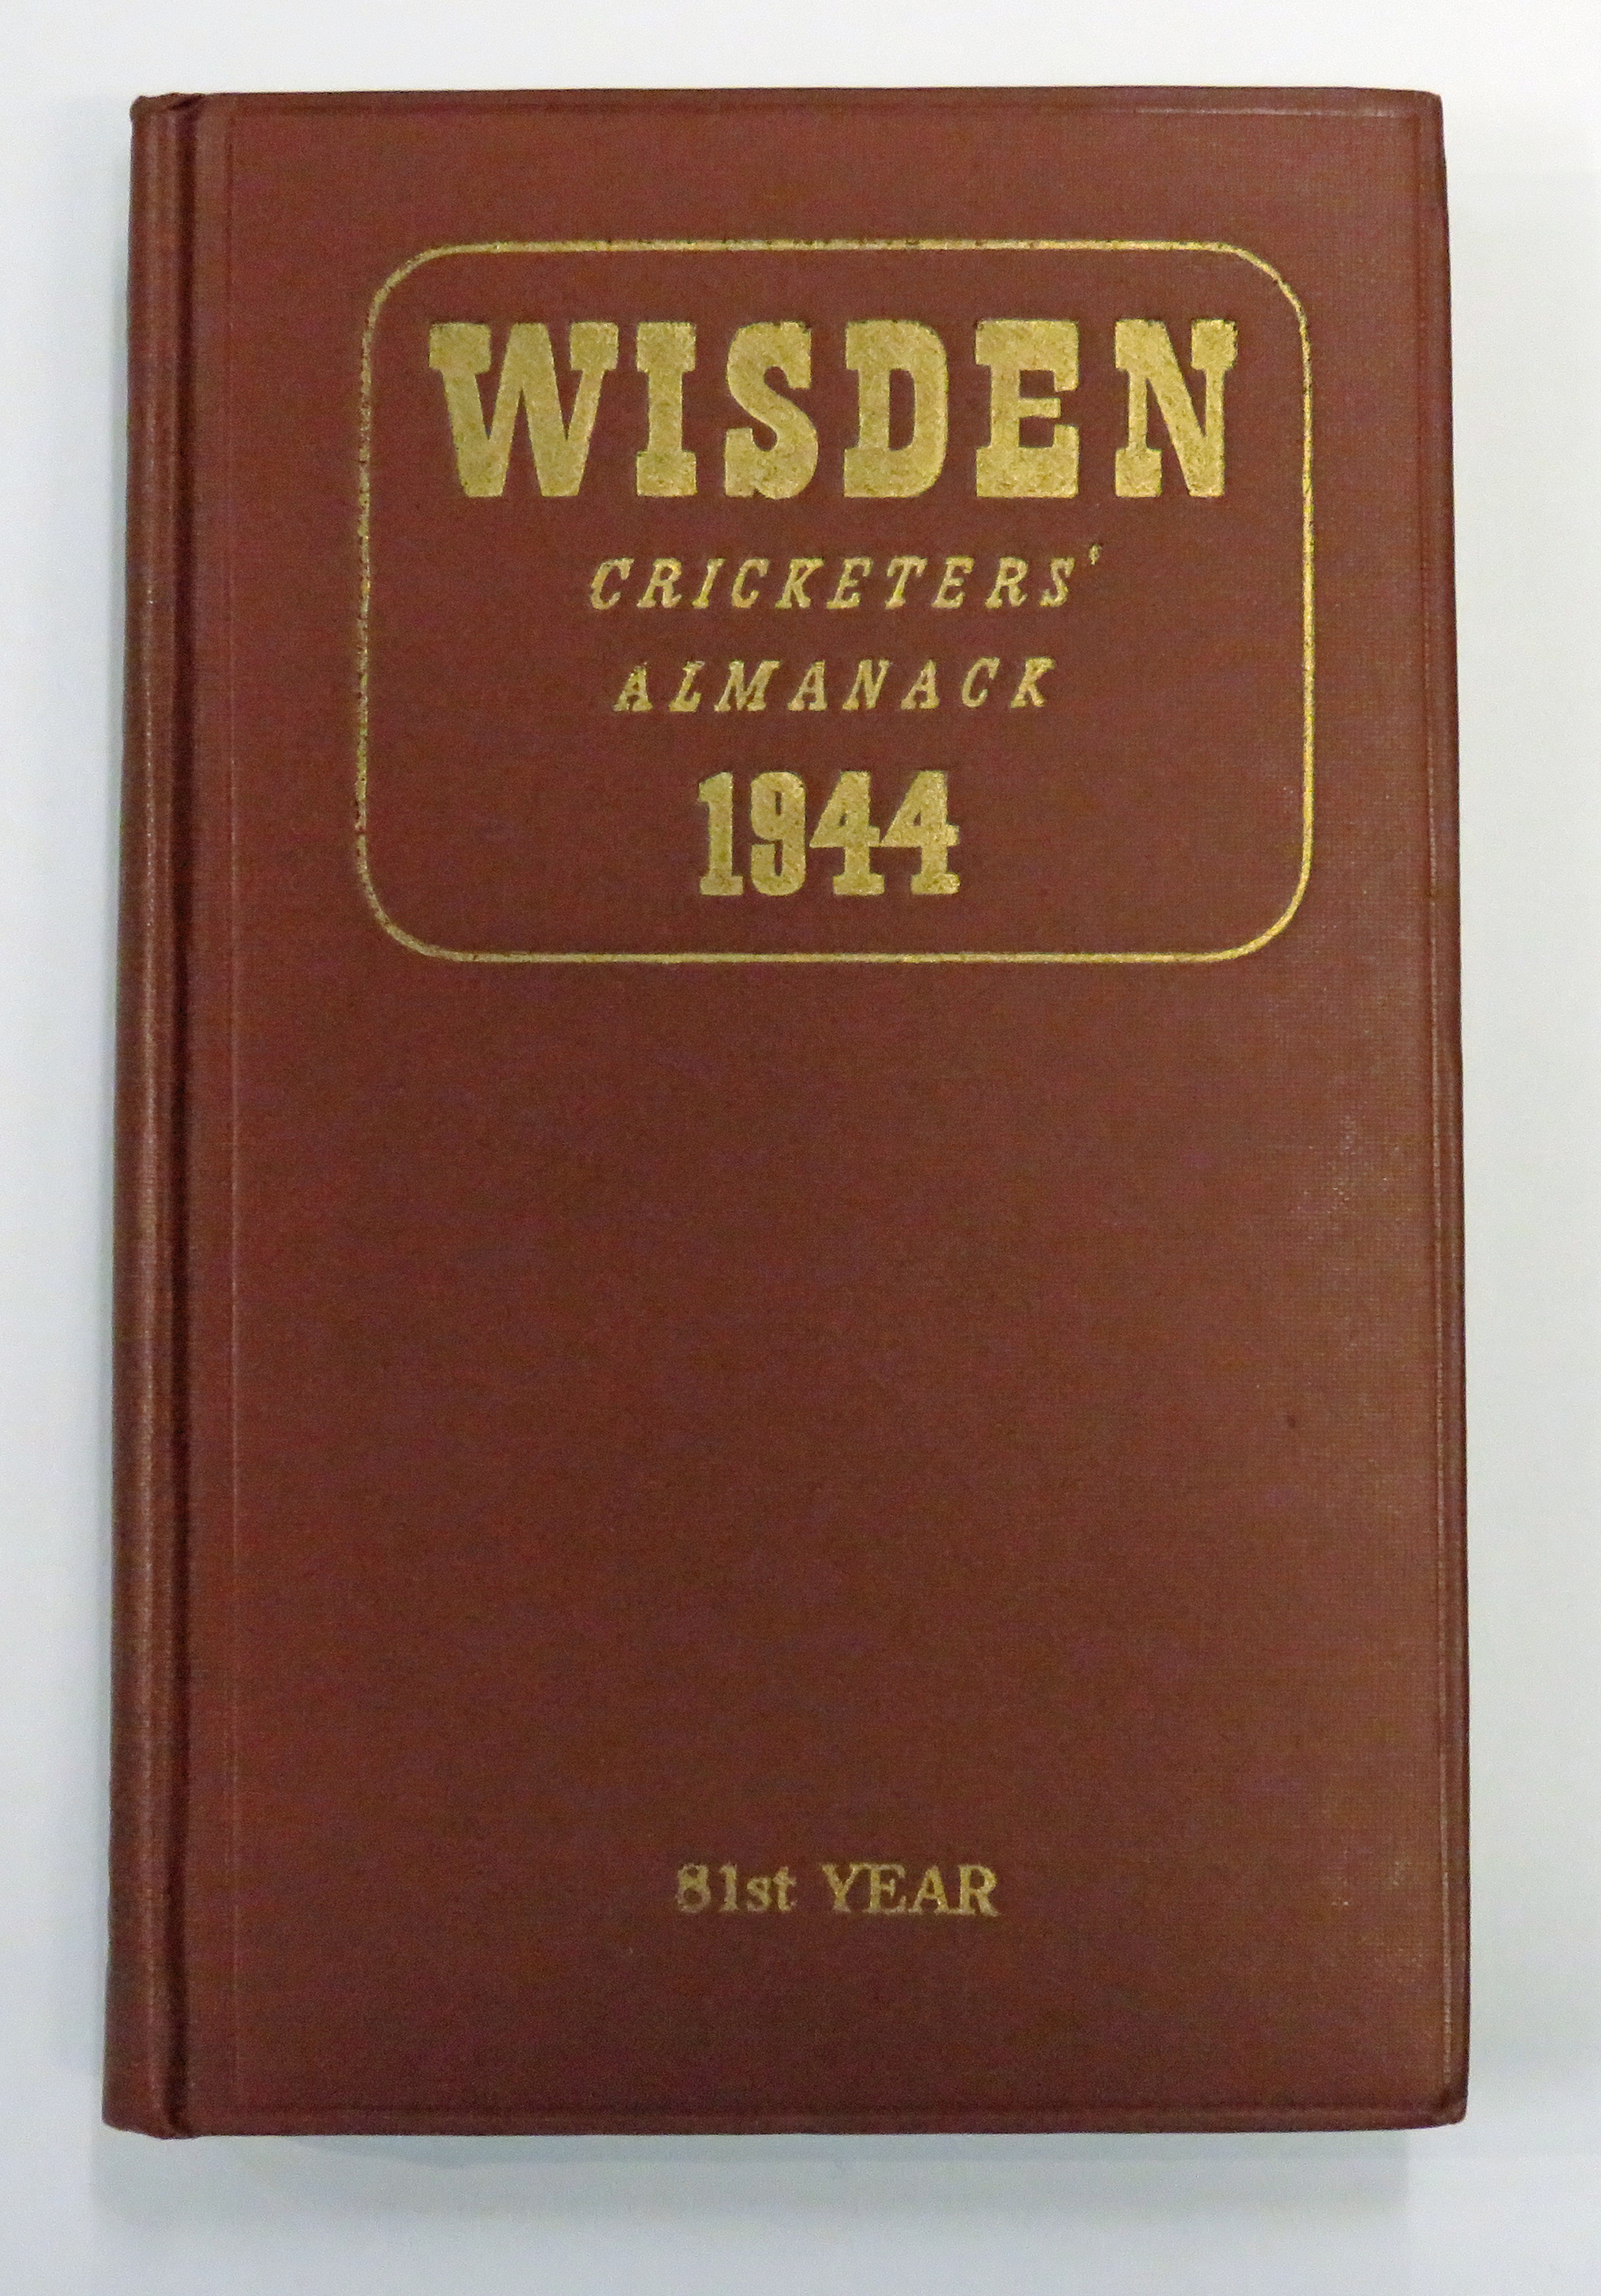 Wisden Cricketers' Almanack 1944 